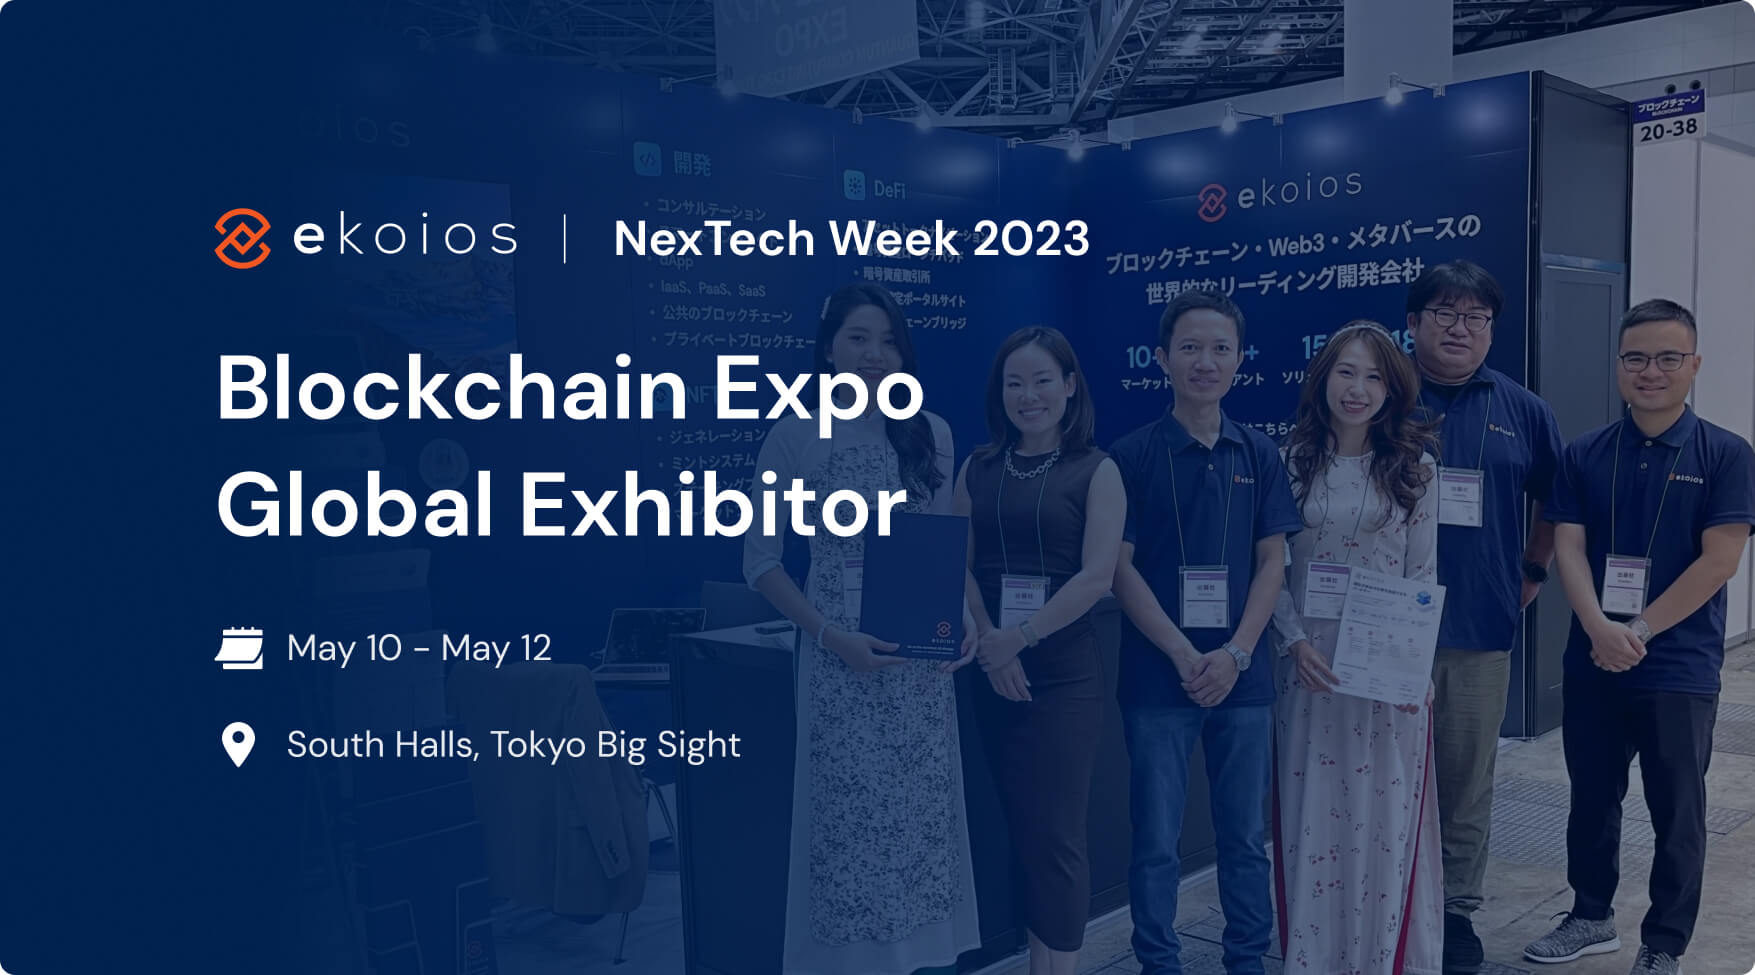 Ekoios Technology returns to Blockchain Expo 2023